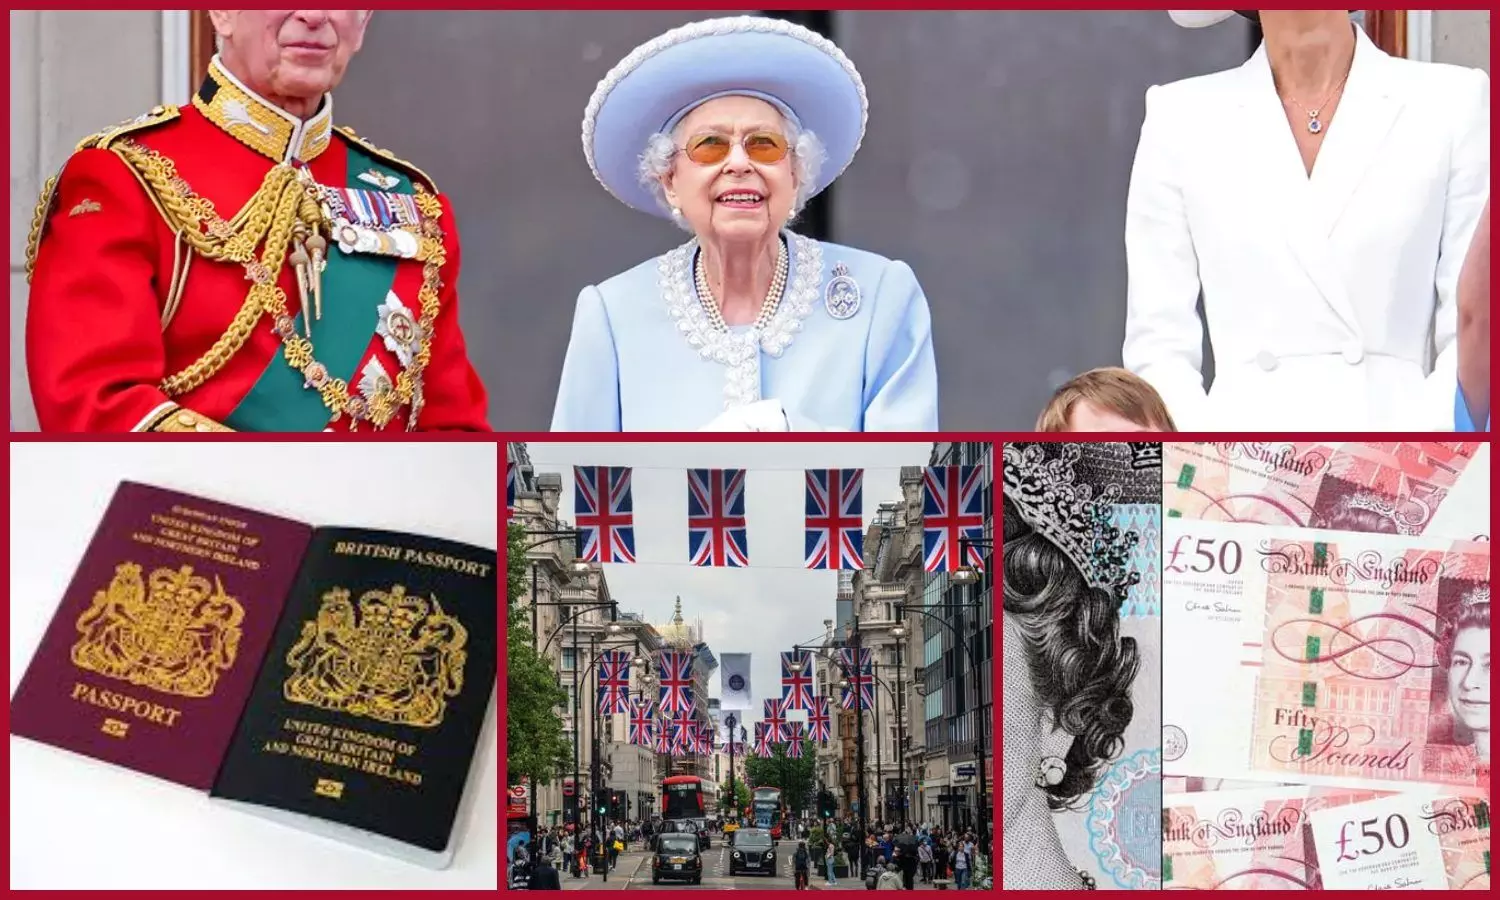 Queen Elizabeth II death after Big change in Britain